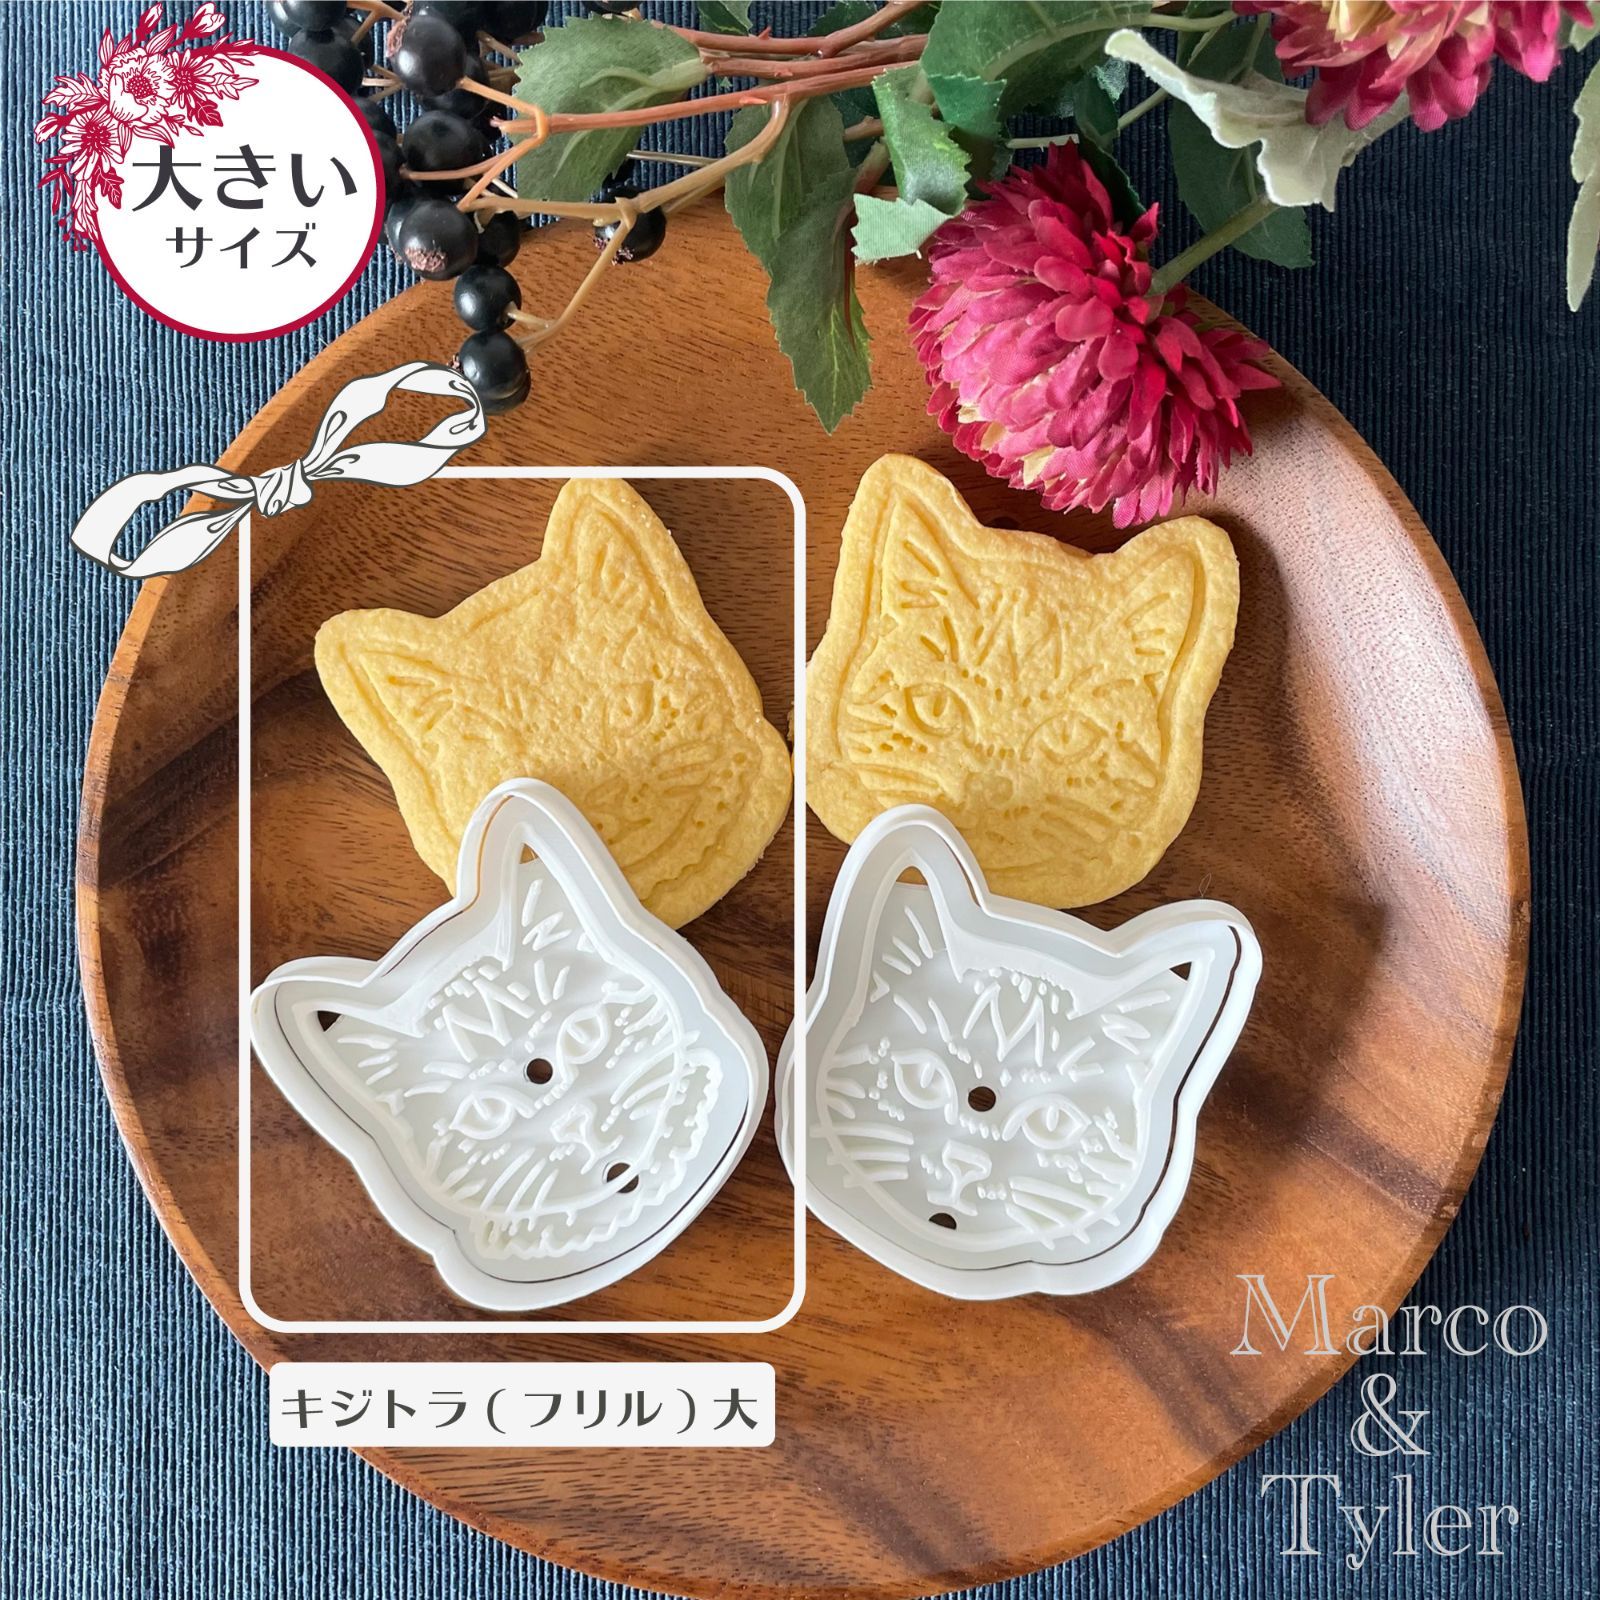 キジトラちゃん(フリル)【大】 クッキー型 - Marco&Tyler(マルコ